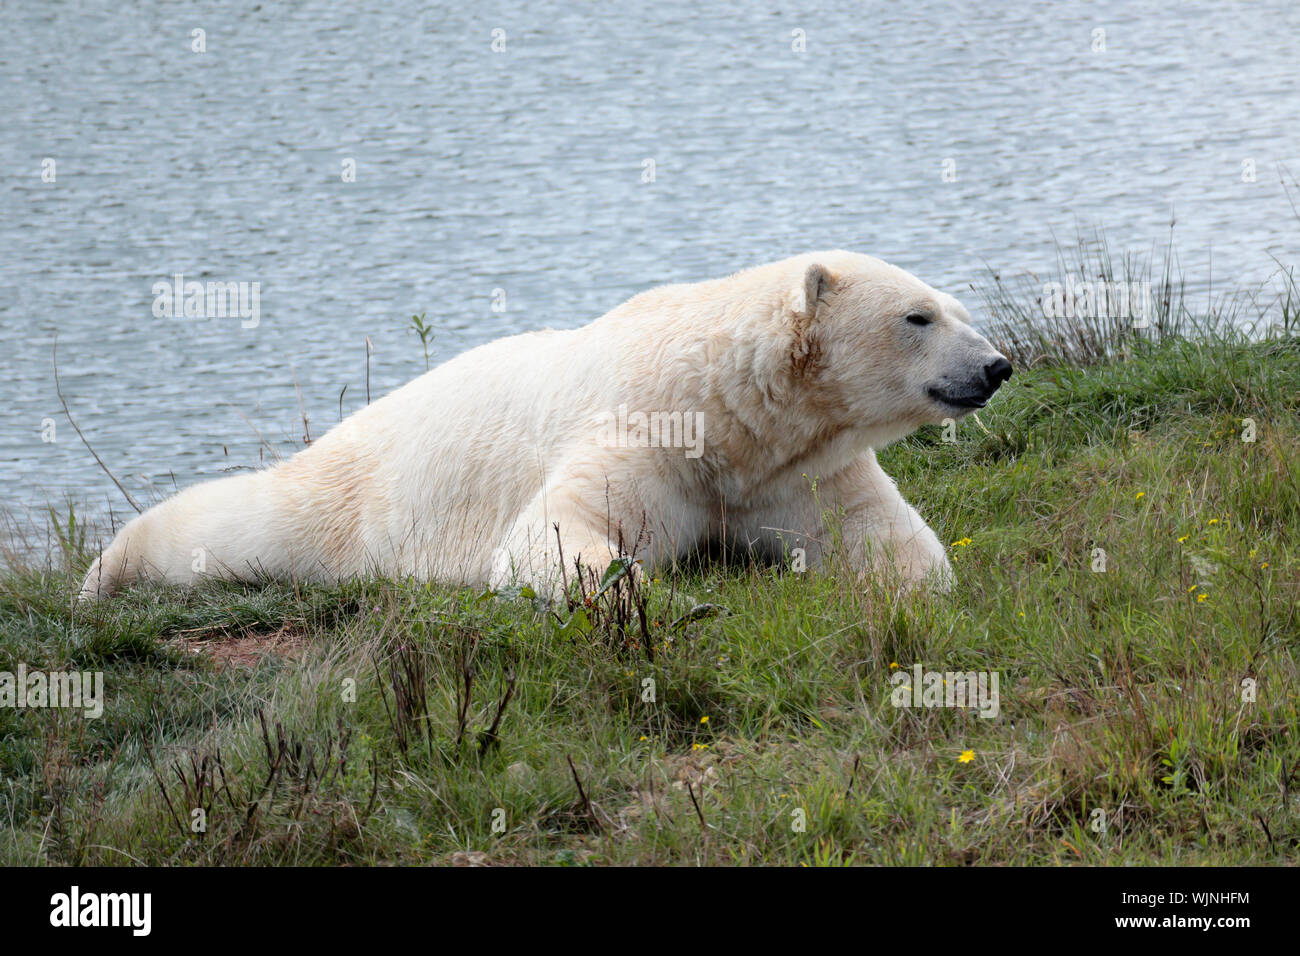 Ein Eisbär - Ursus Maritimus-U. maritimus ruht auf dem grasbewachsenen Bank von einem Körper von Wasser Stockfoto